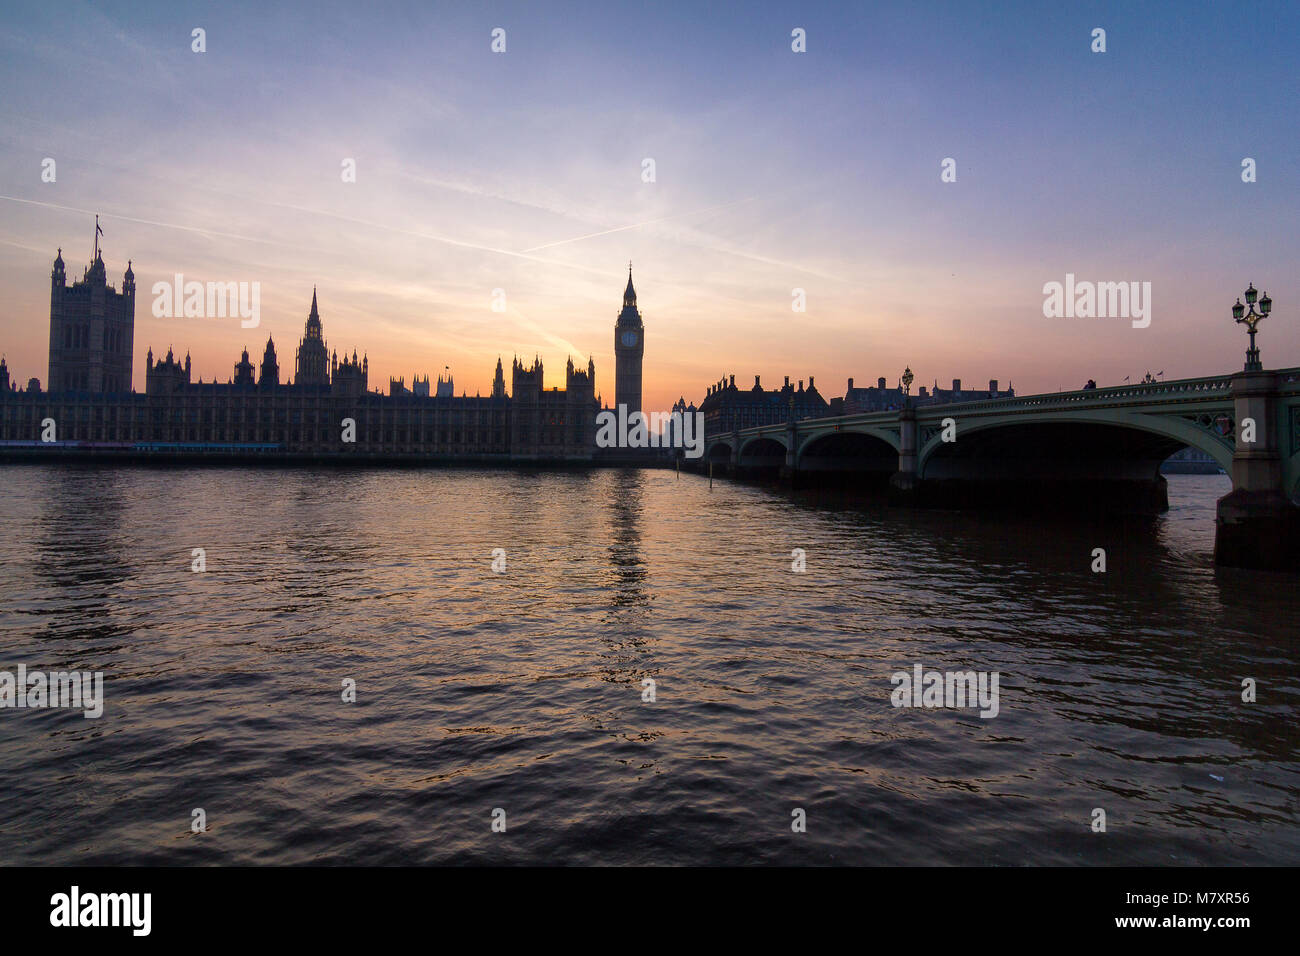 Londra, UK: il parlamento di Westminster con Thames in primo piano al tramonto Foto Stock